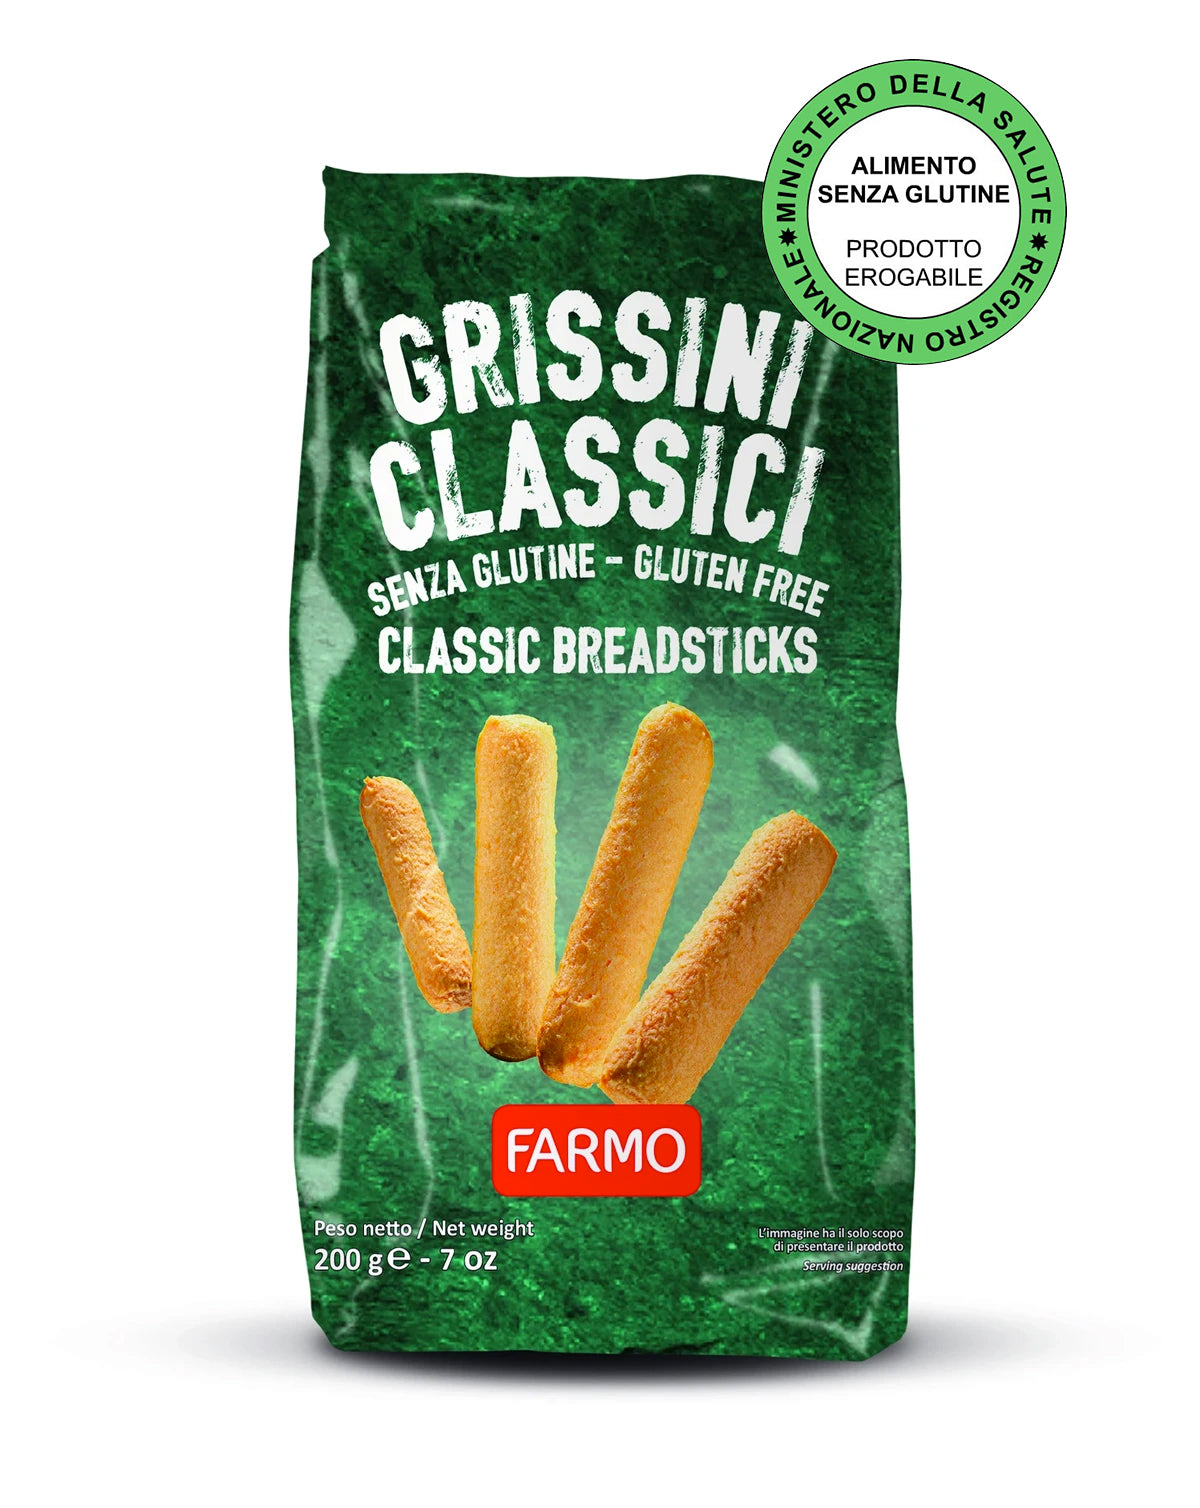 Grissini Classici - Farmo - Eat a better life